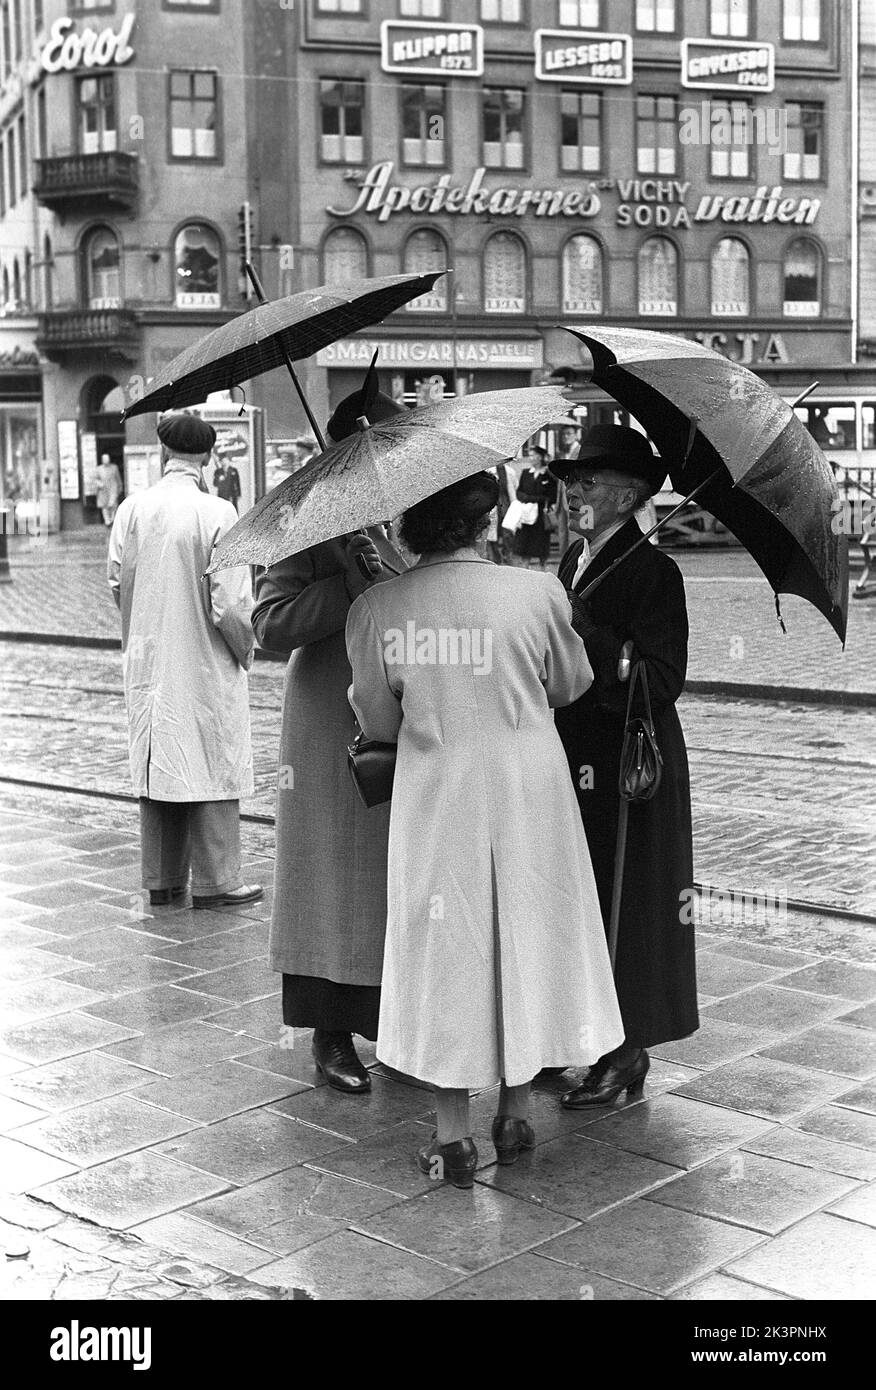 Schirme in der 1950s. Eine Gruppe älterer Frauen steht unter ihren Schirmen zusammen. Es ist ein regnerischer Tag in Stockholm Schweden 1953. ref 2A-1 Stockfoto